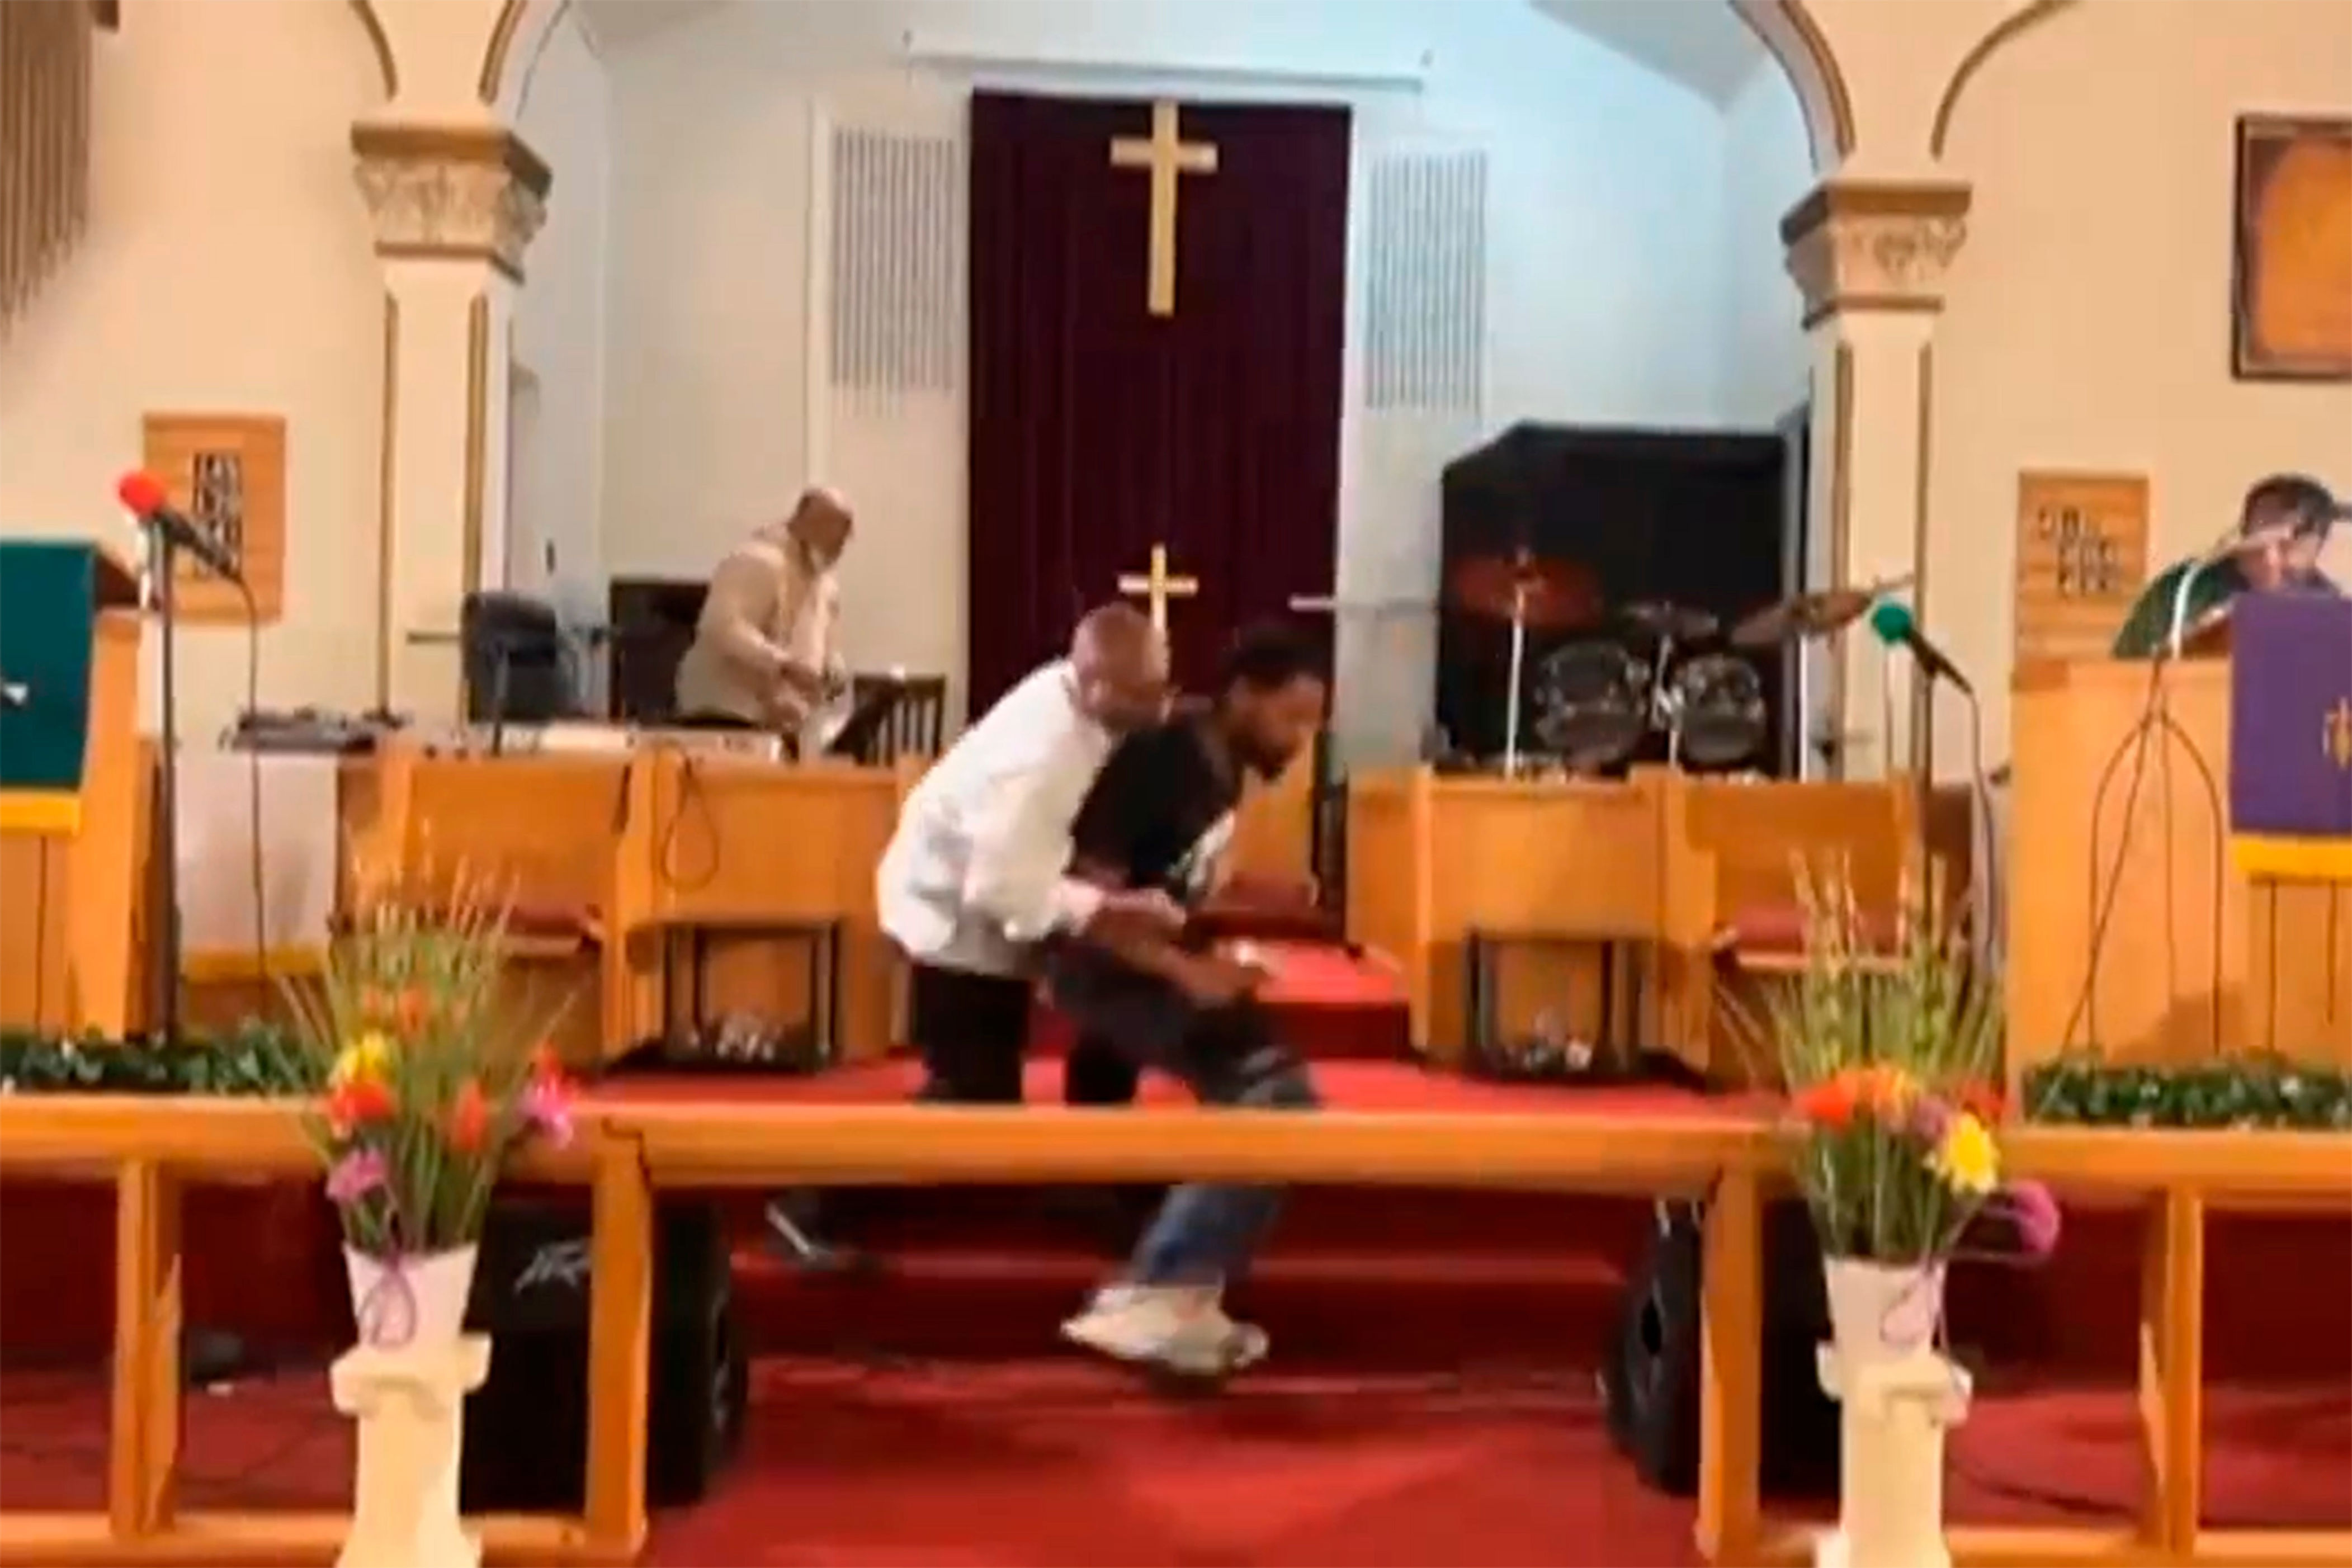 pastor en pittsburg, ee. uu., es apuntado con un arma, la cual falla por “un milagro de dios”